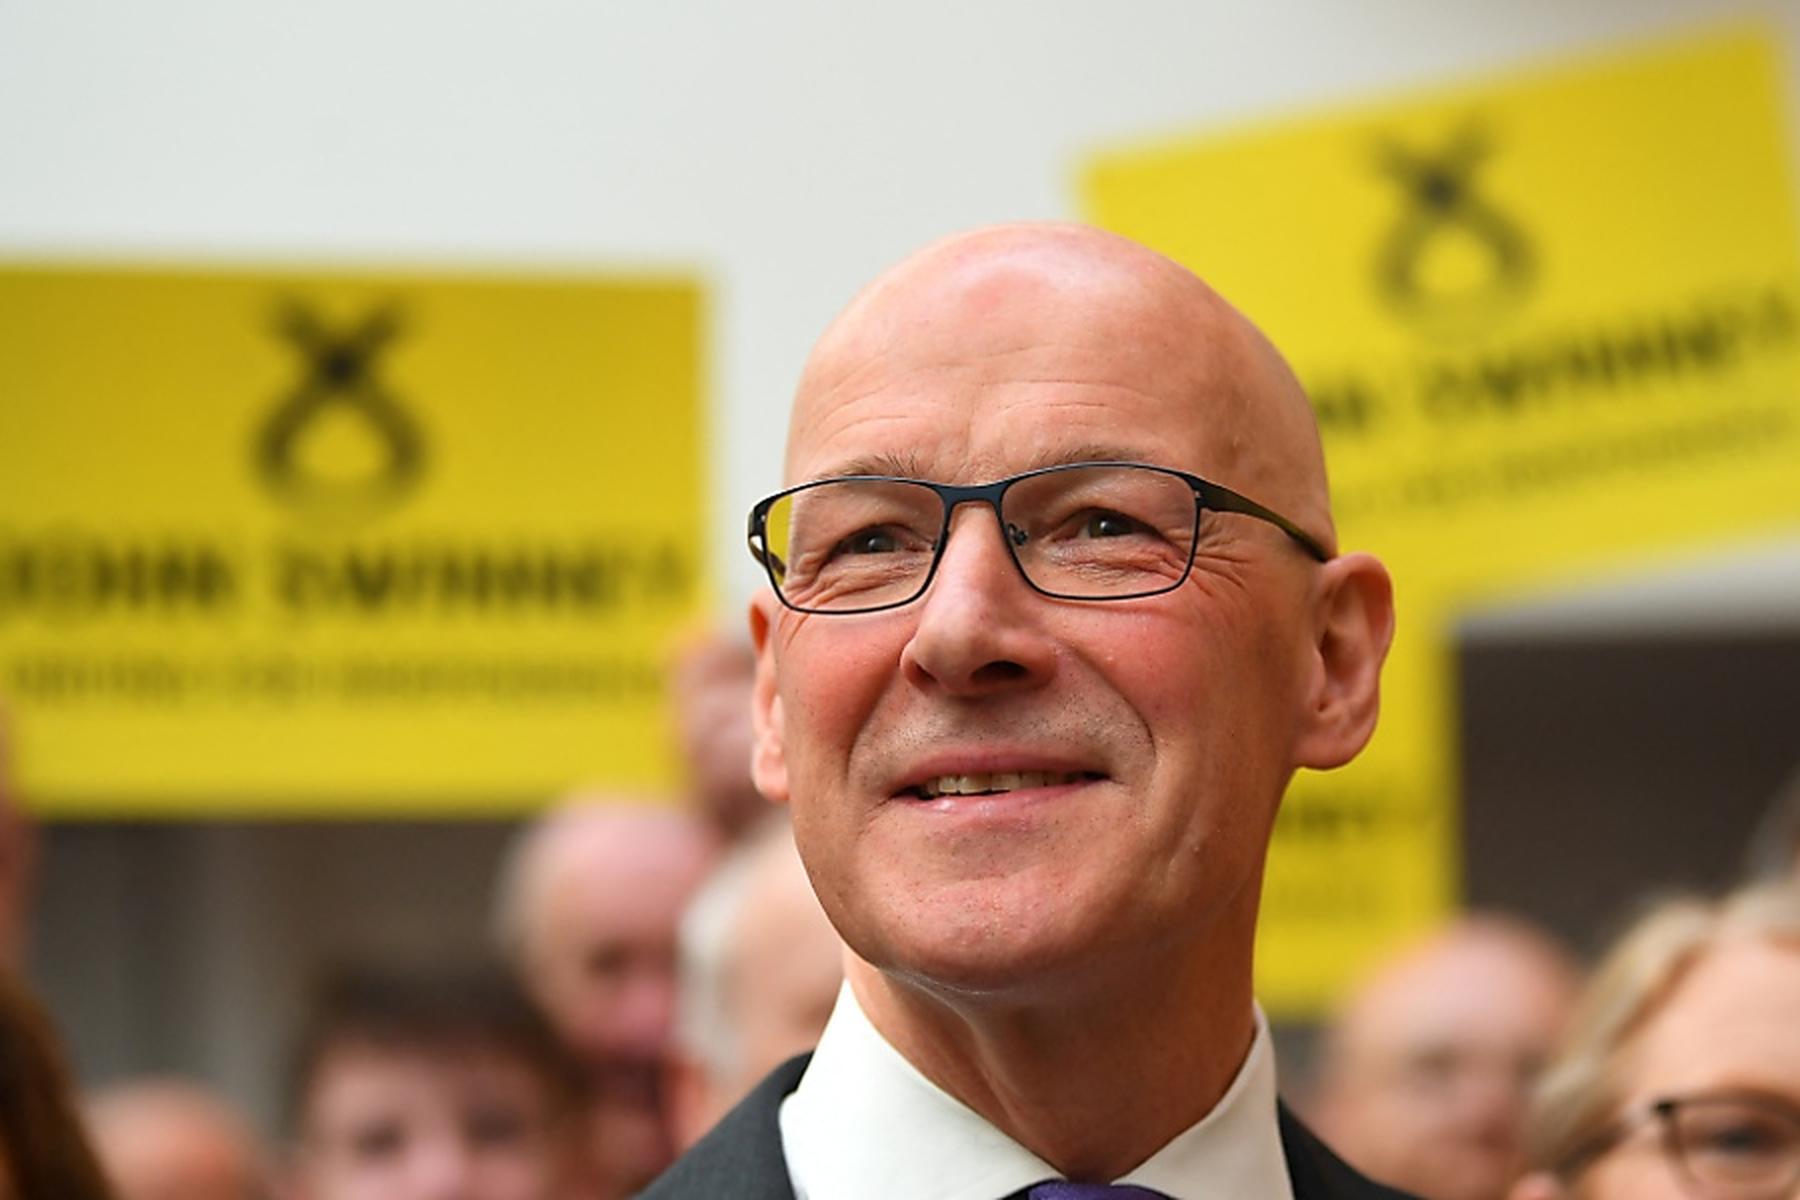 London: John Swinney neuer Chef der schottischen Regierungspartei